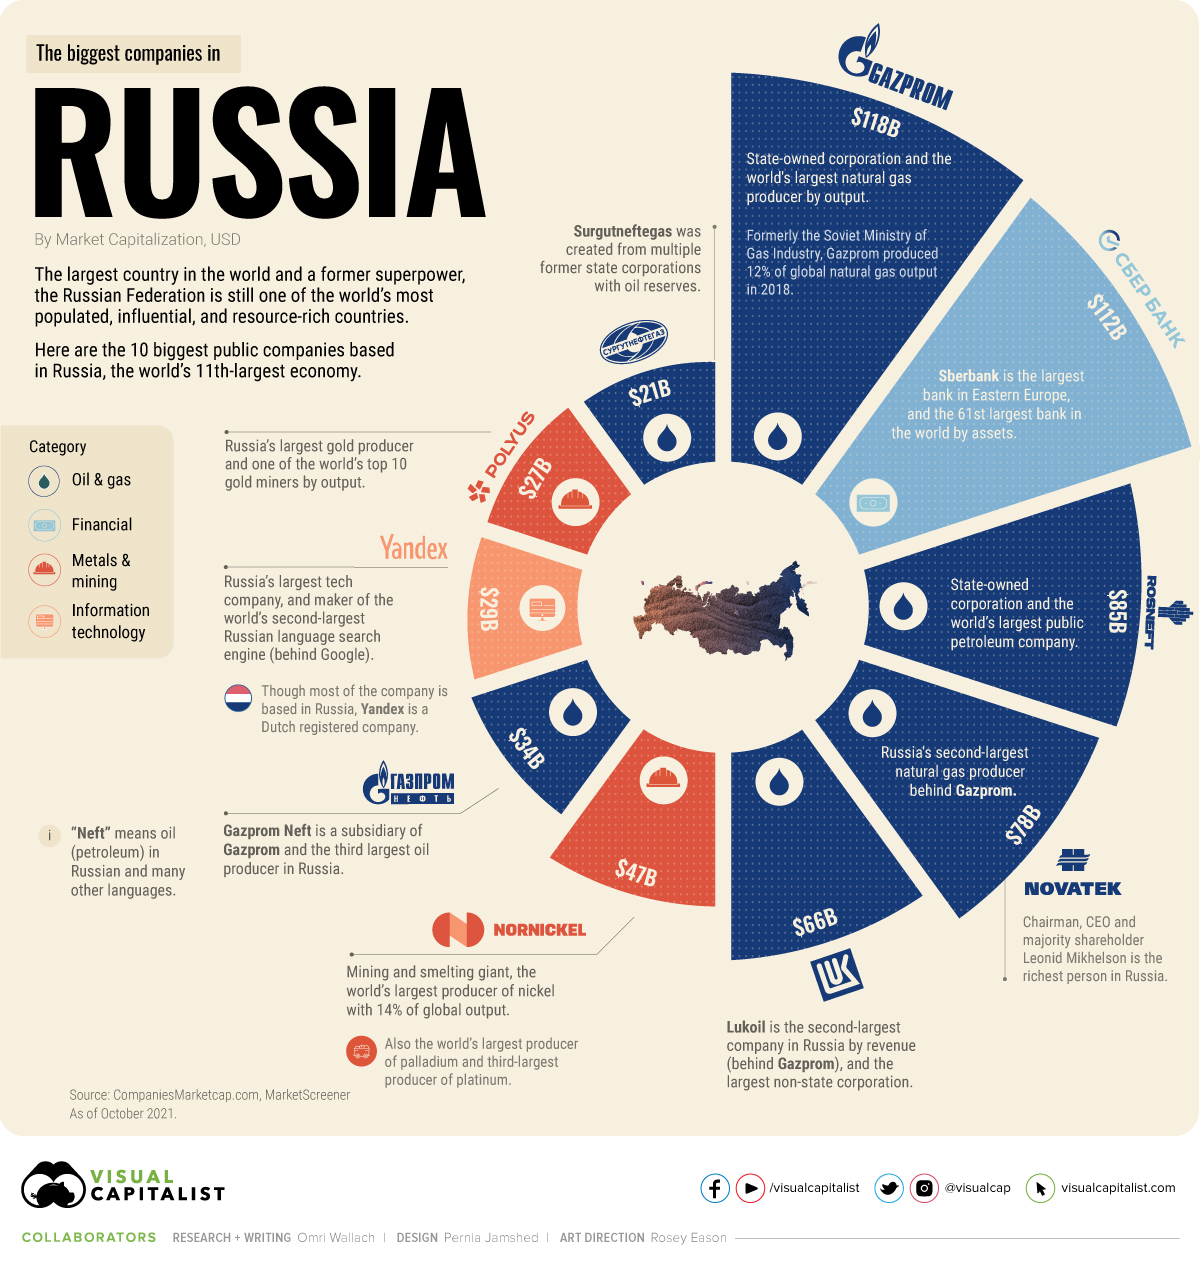 Las 10 empresas más grandes de Rusia